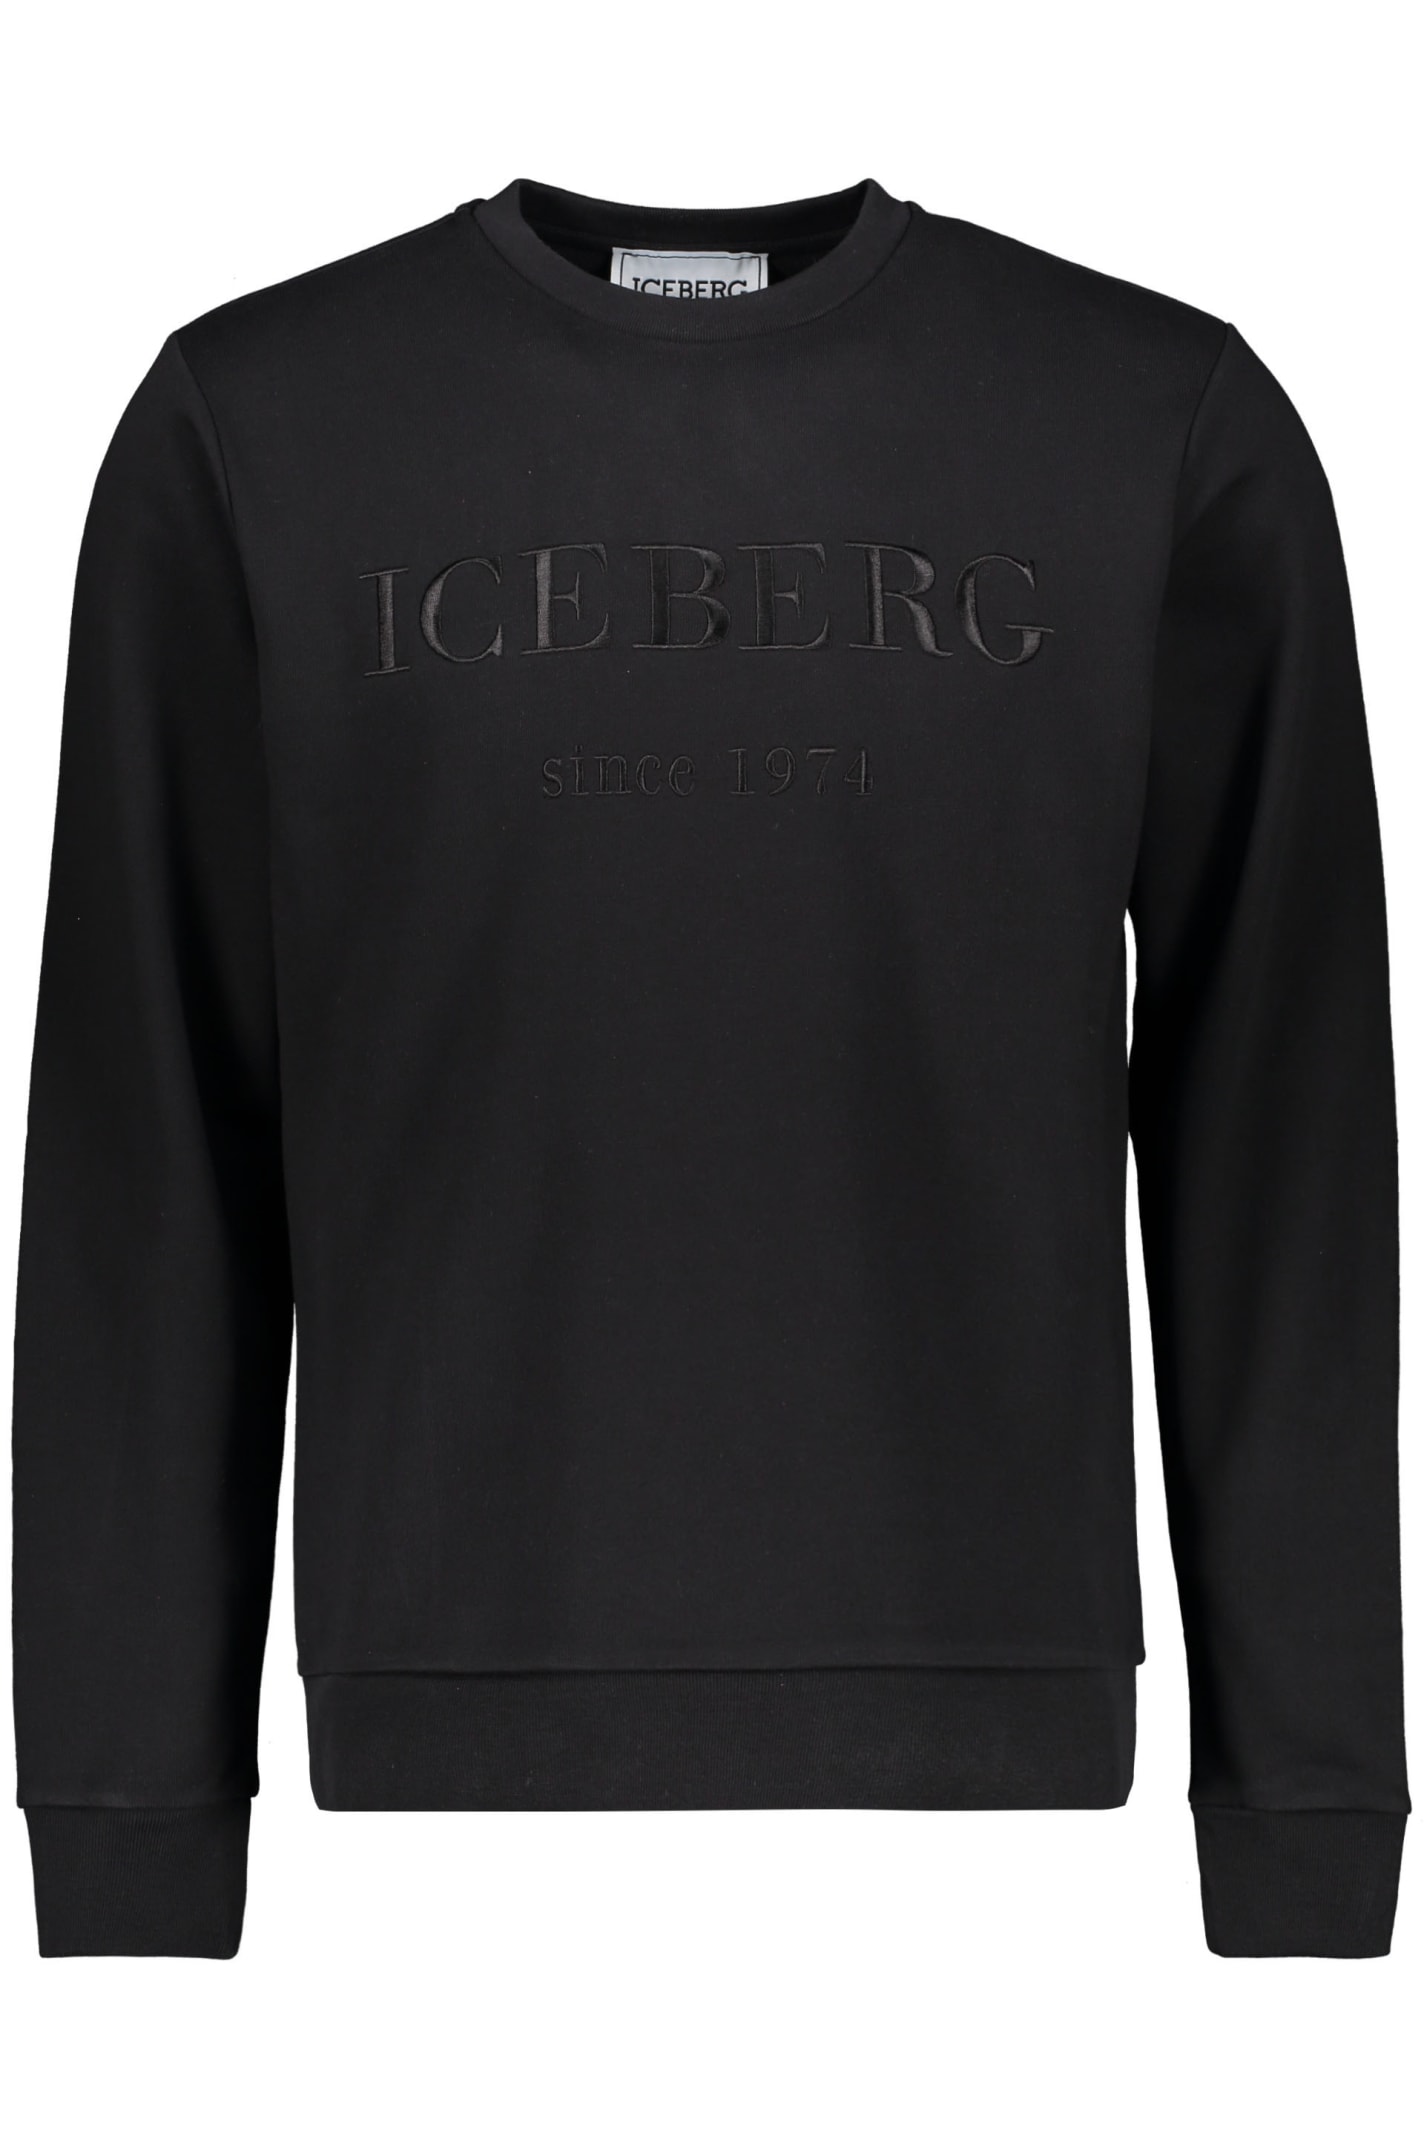 Iceberg Long Sleeve Sweatshirt